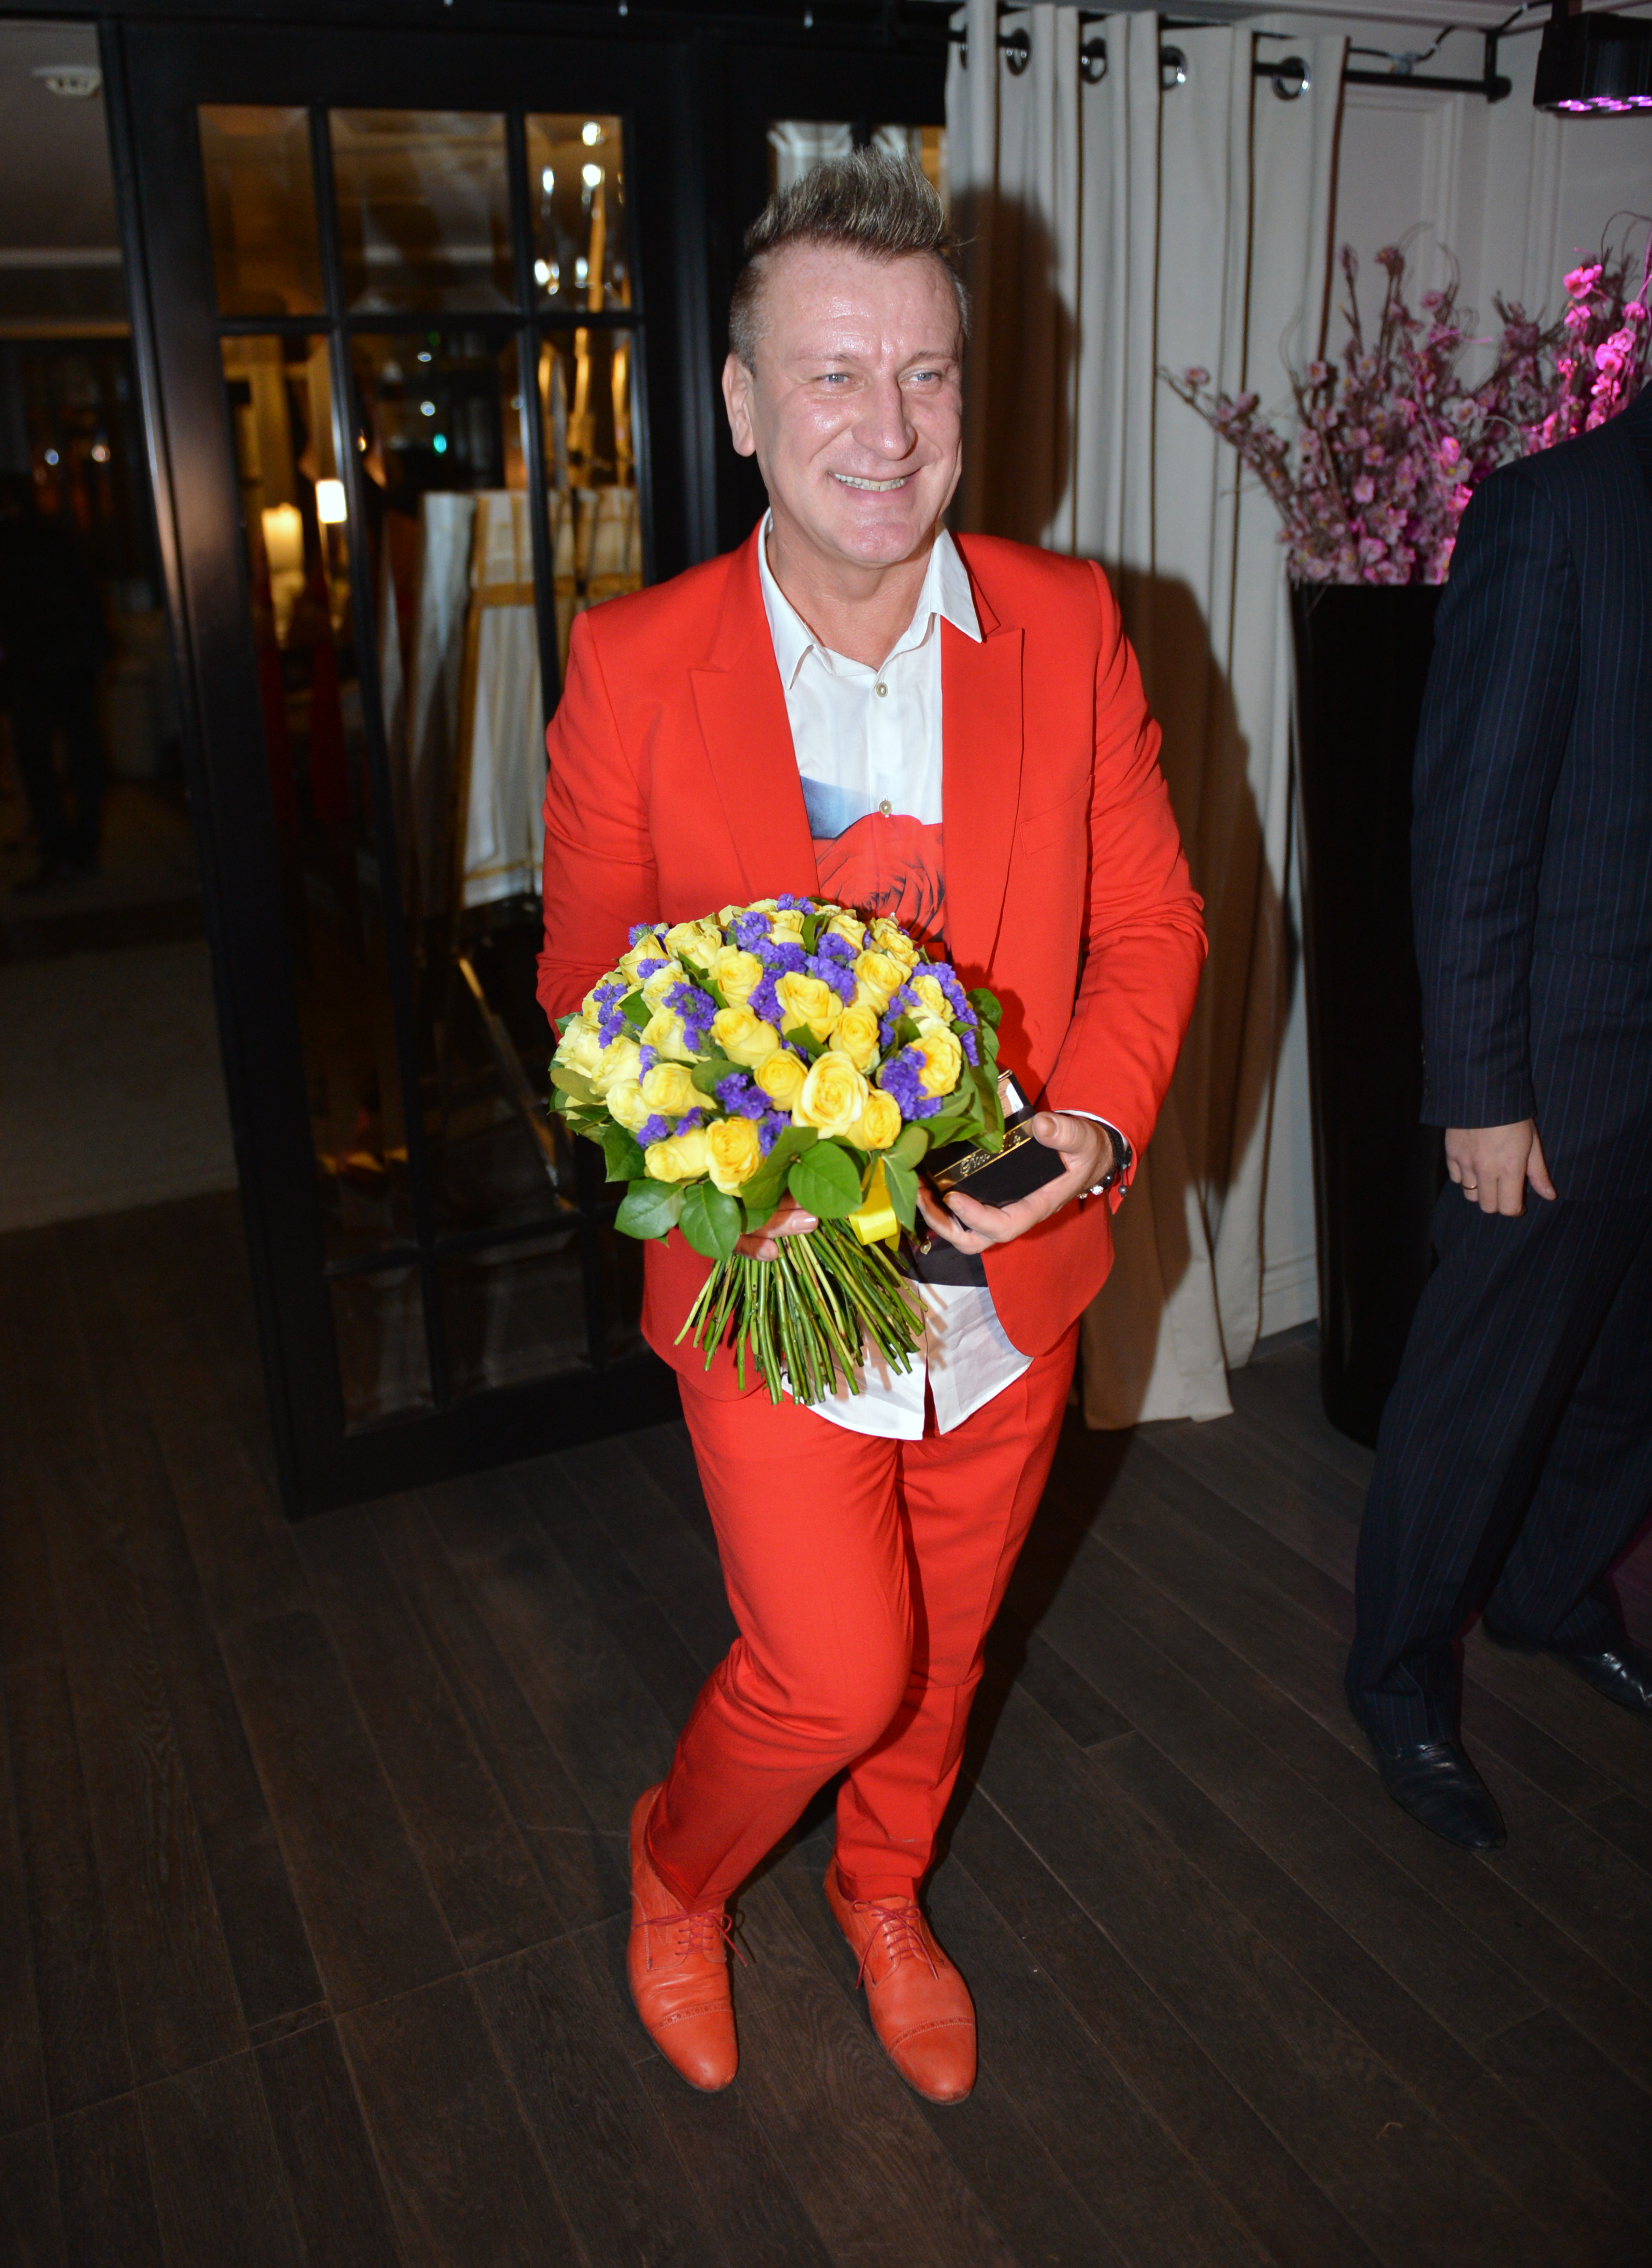 Сергей Пенкин появился на празднике в красном костюме, привлекавшем внимание всех гостей, выбравших более сдержанные наряды